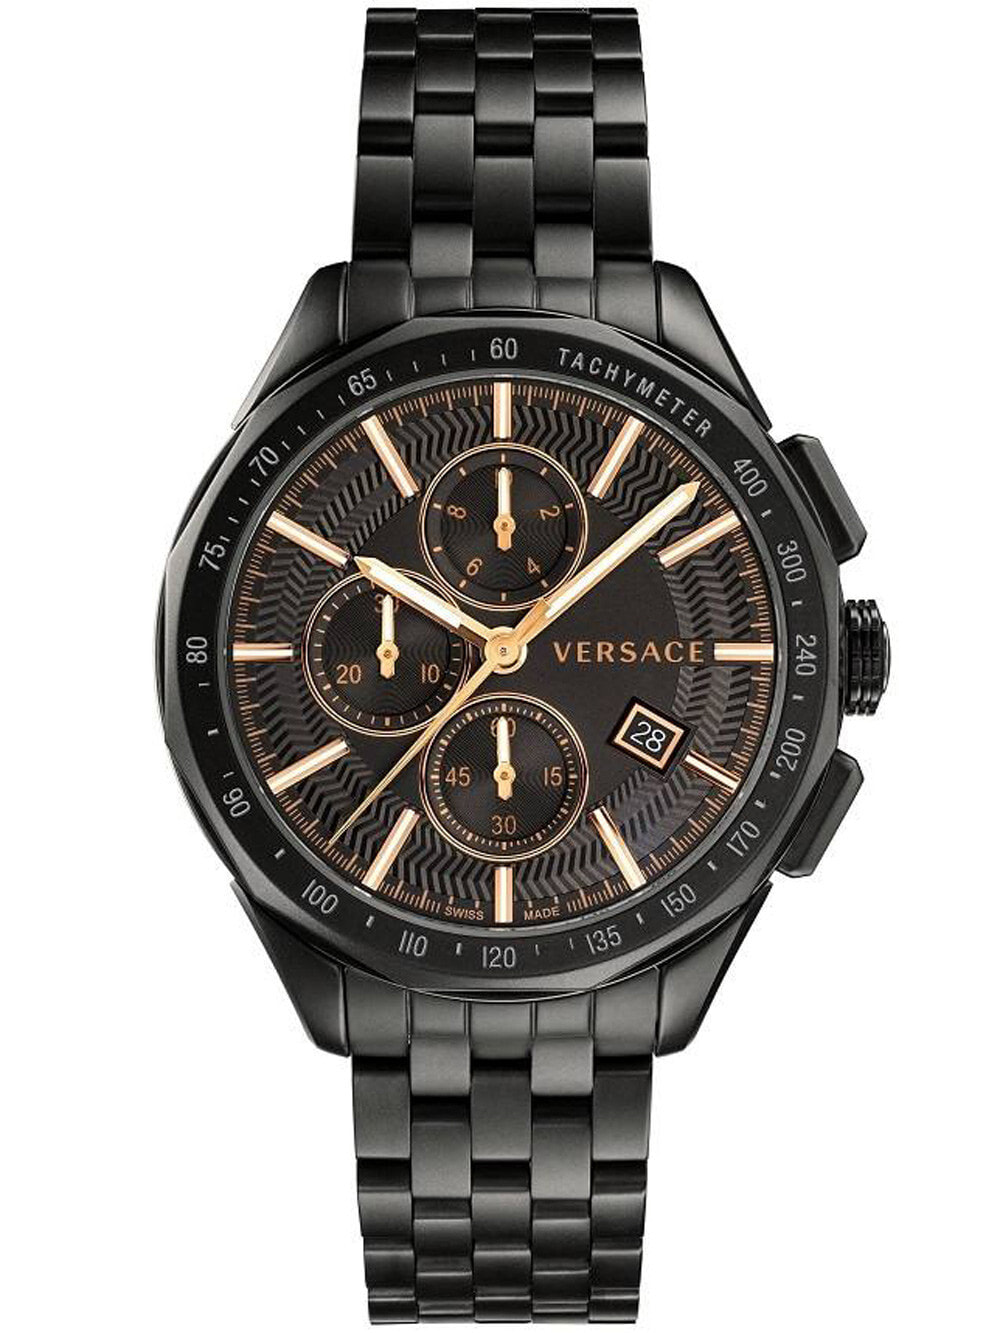 Мужские наручные часы с черным браслетом Versace VEBJ00618 Glace Chronograph 44mm 5ATM